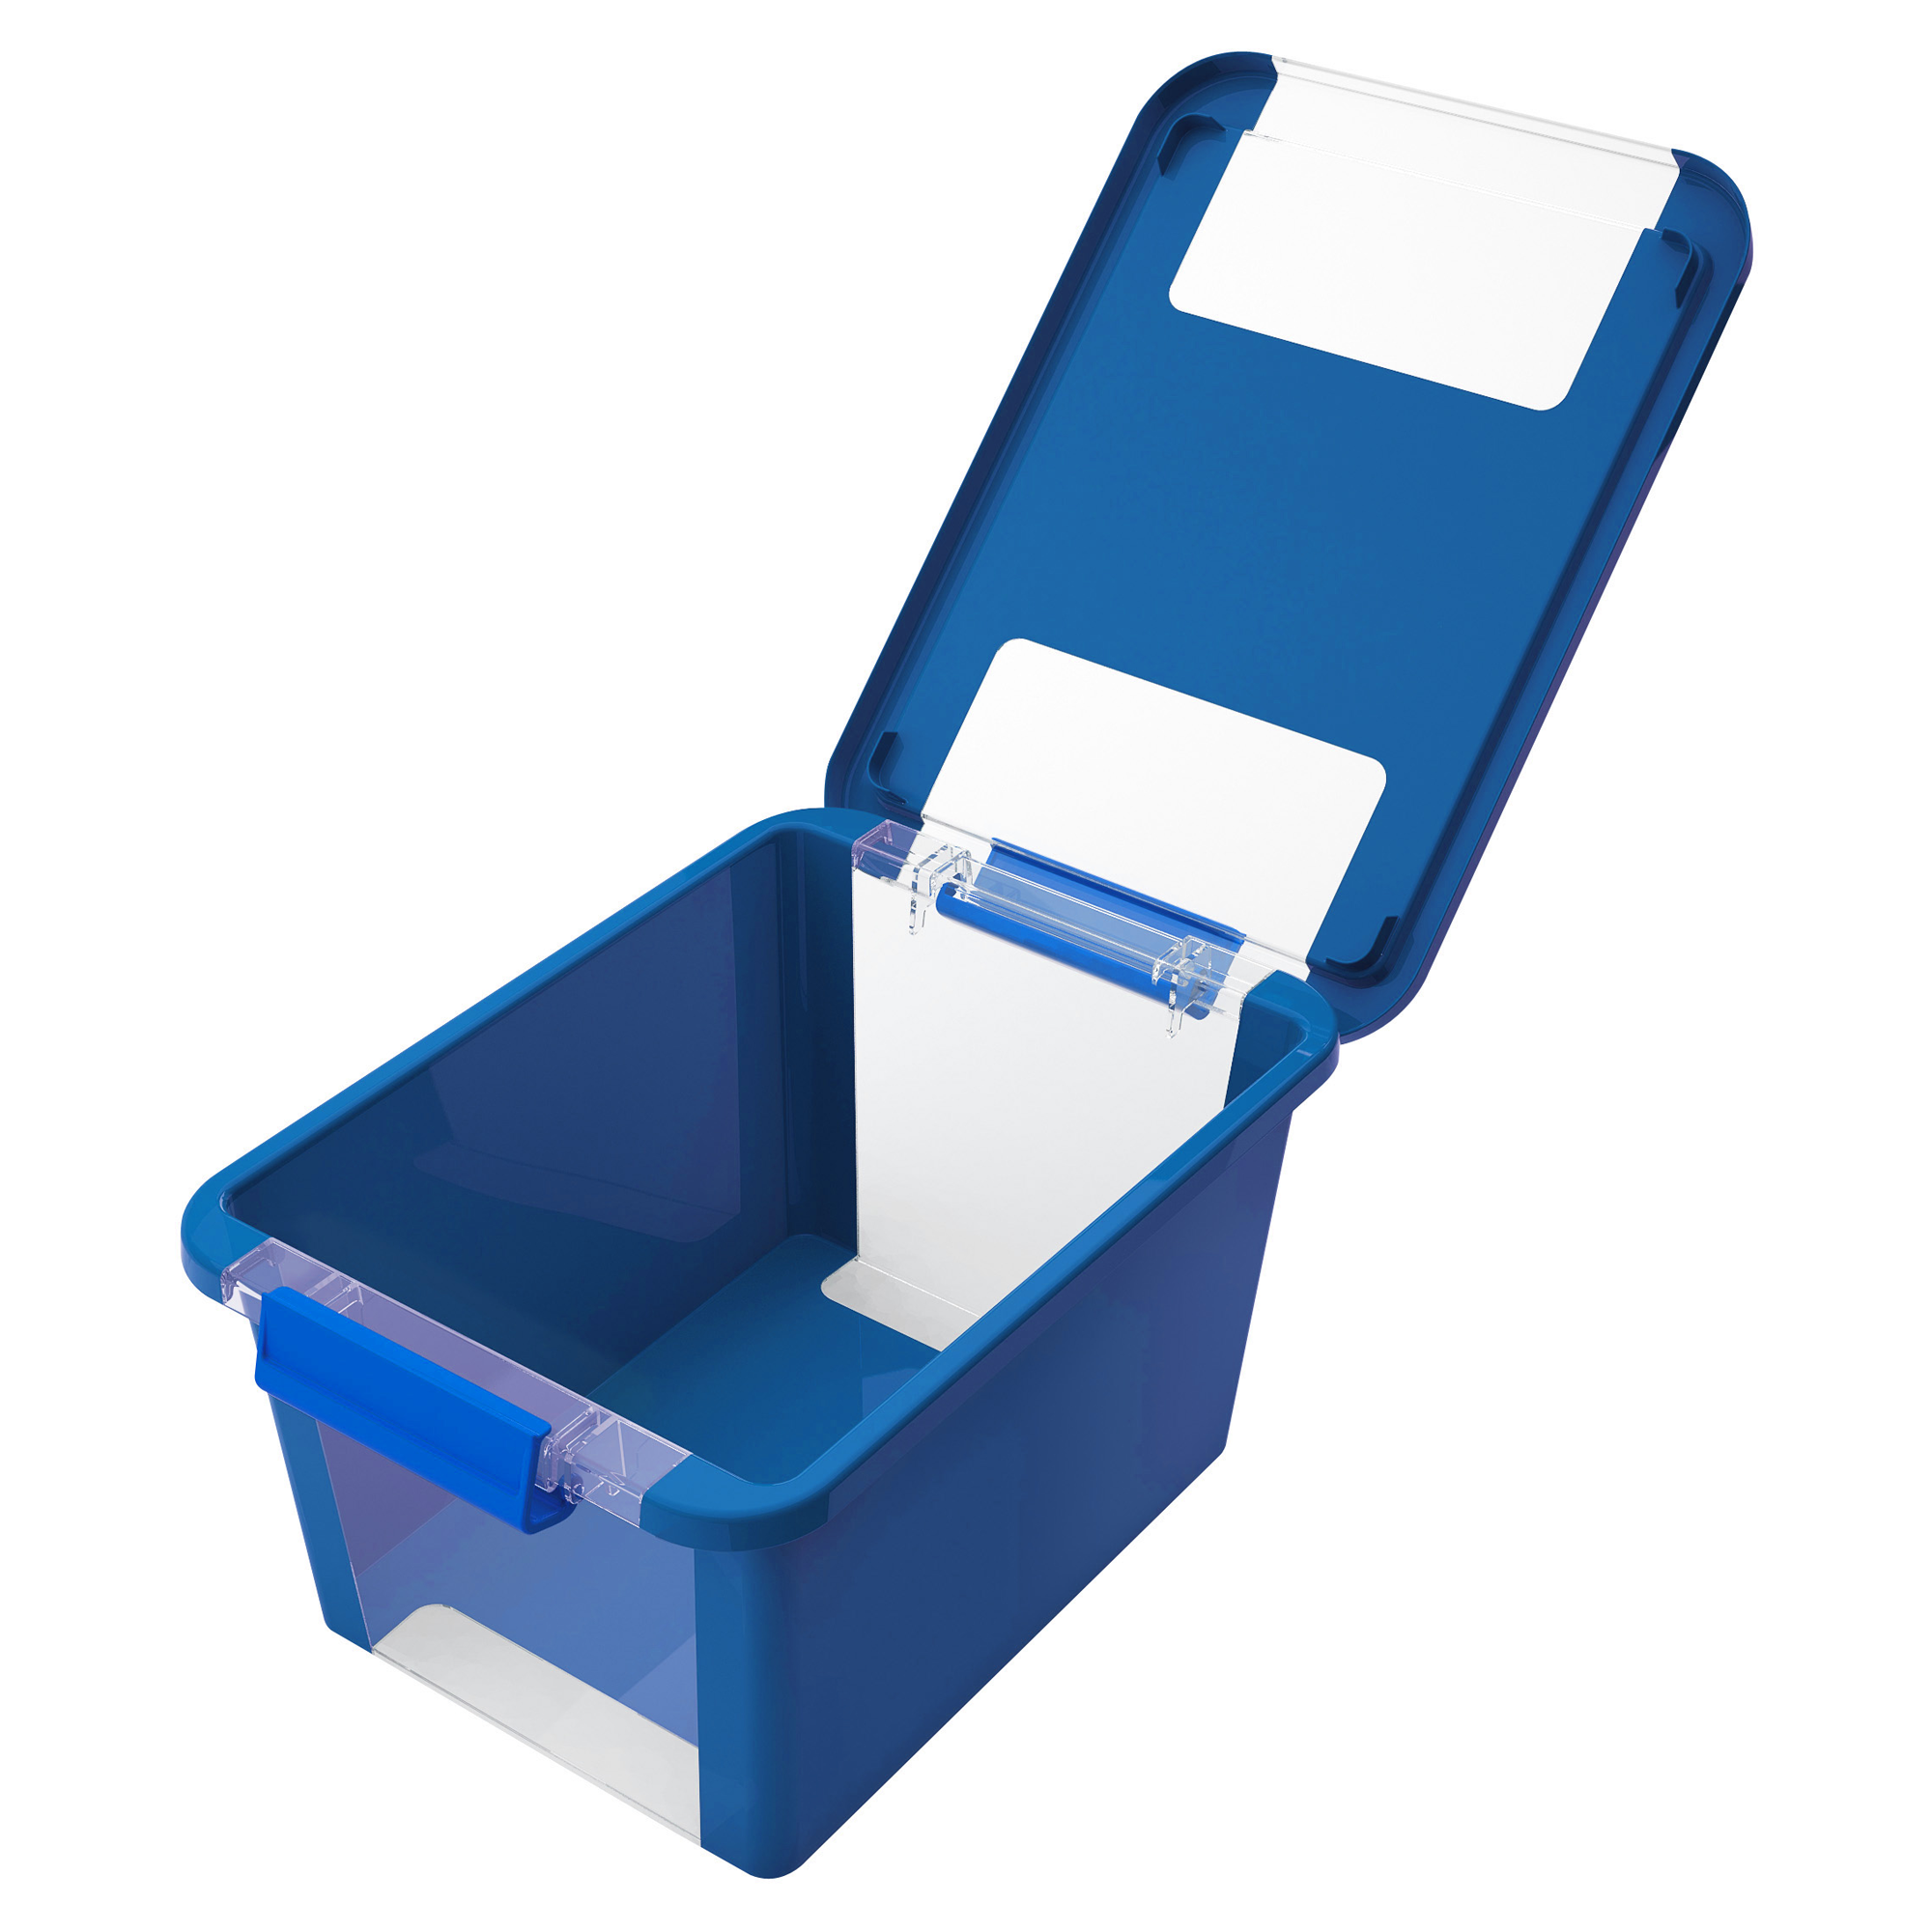 Aufbewahrungsbox Bi Box S blau 36,5 x 26 x 19 cm + product picture